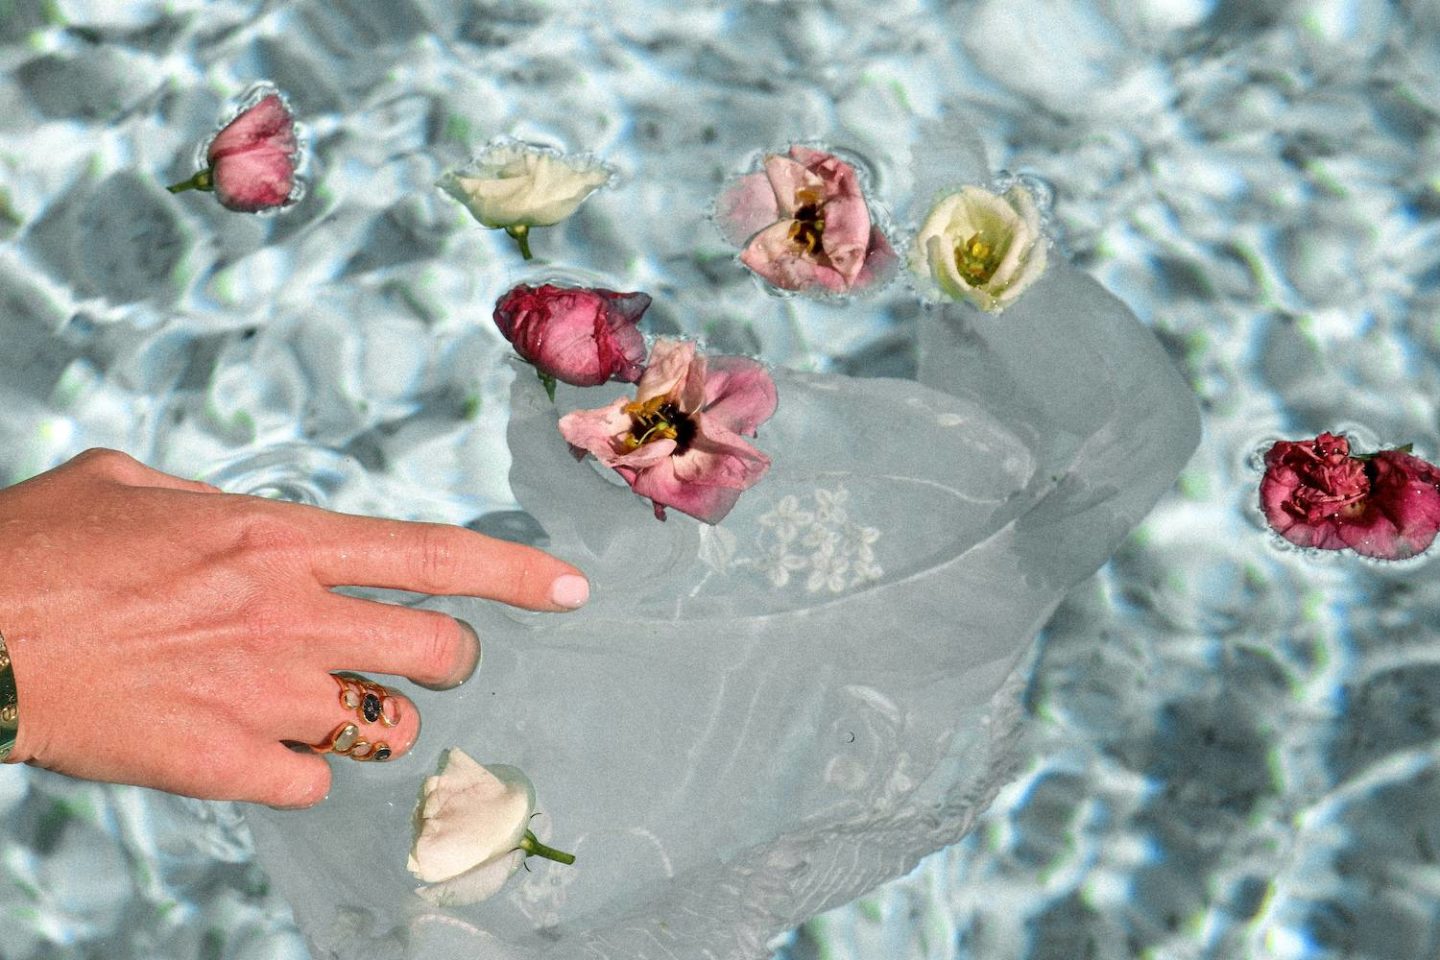 Flower petals in water